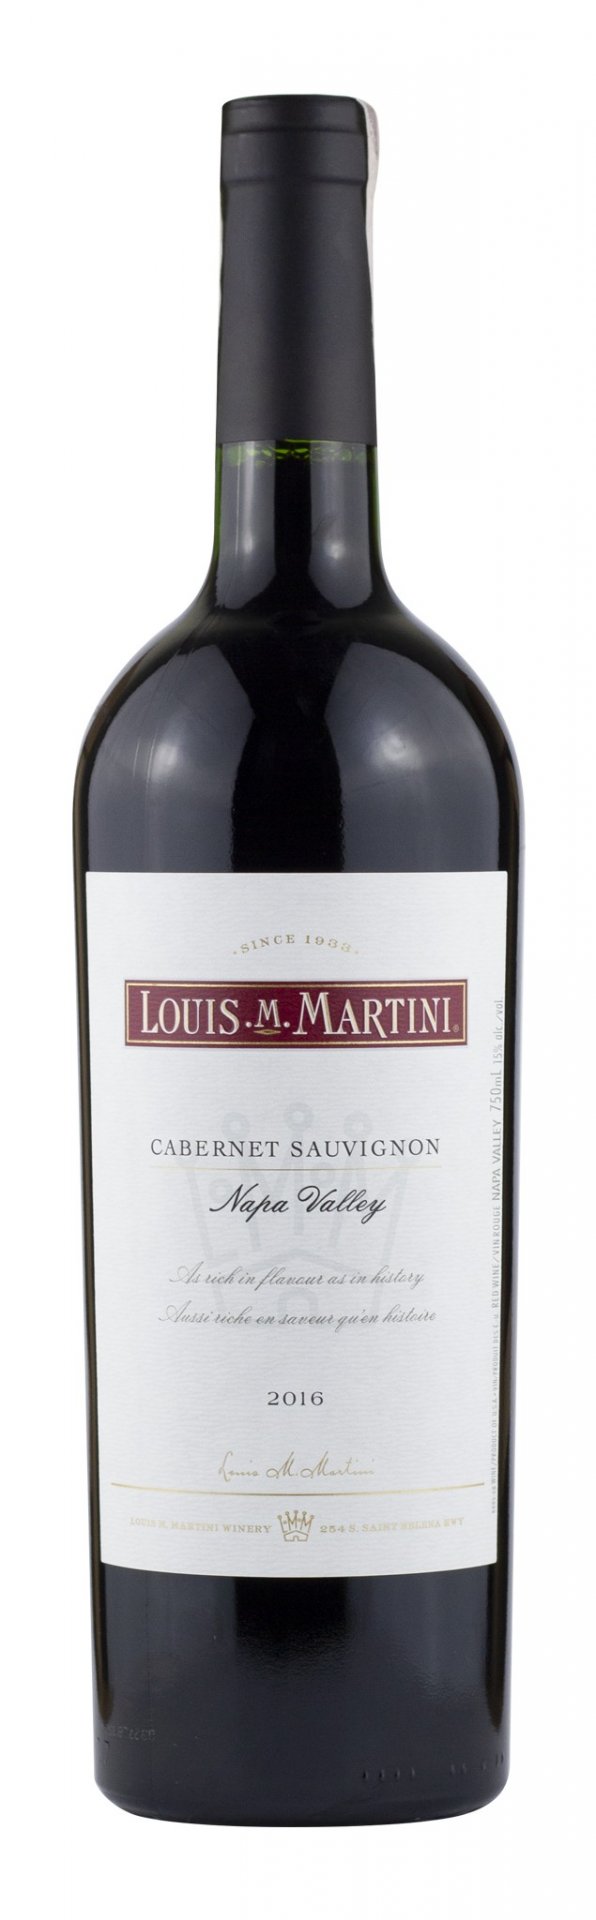 Louis M. Martini Cabernet Sauvignon Napa